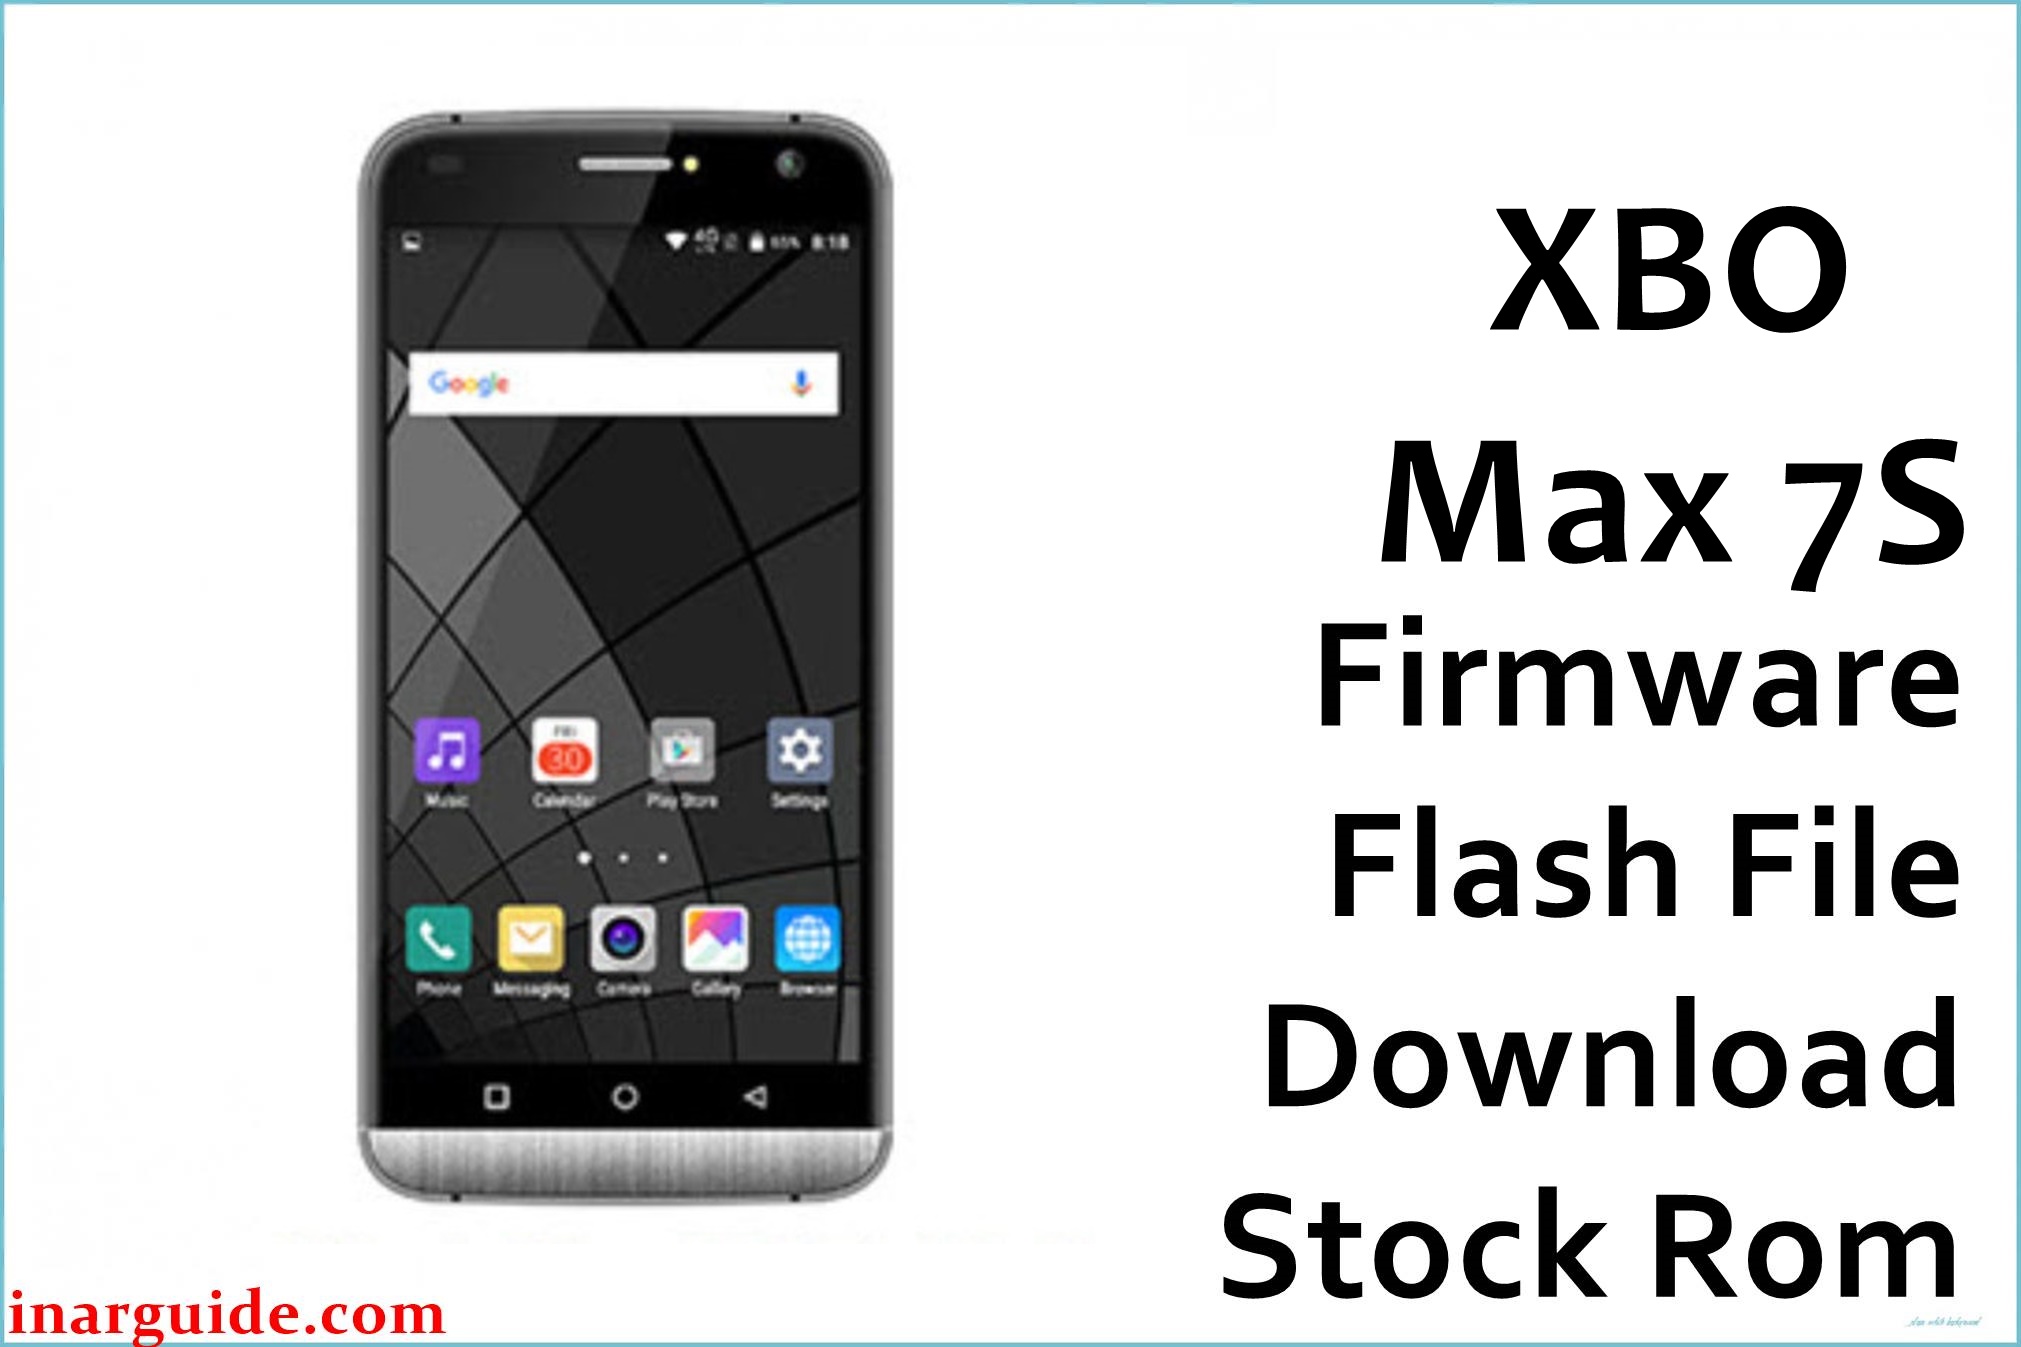 XBO Max 7S